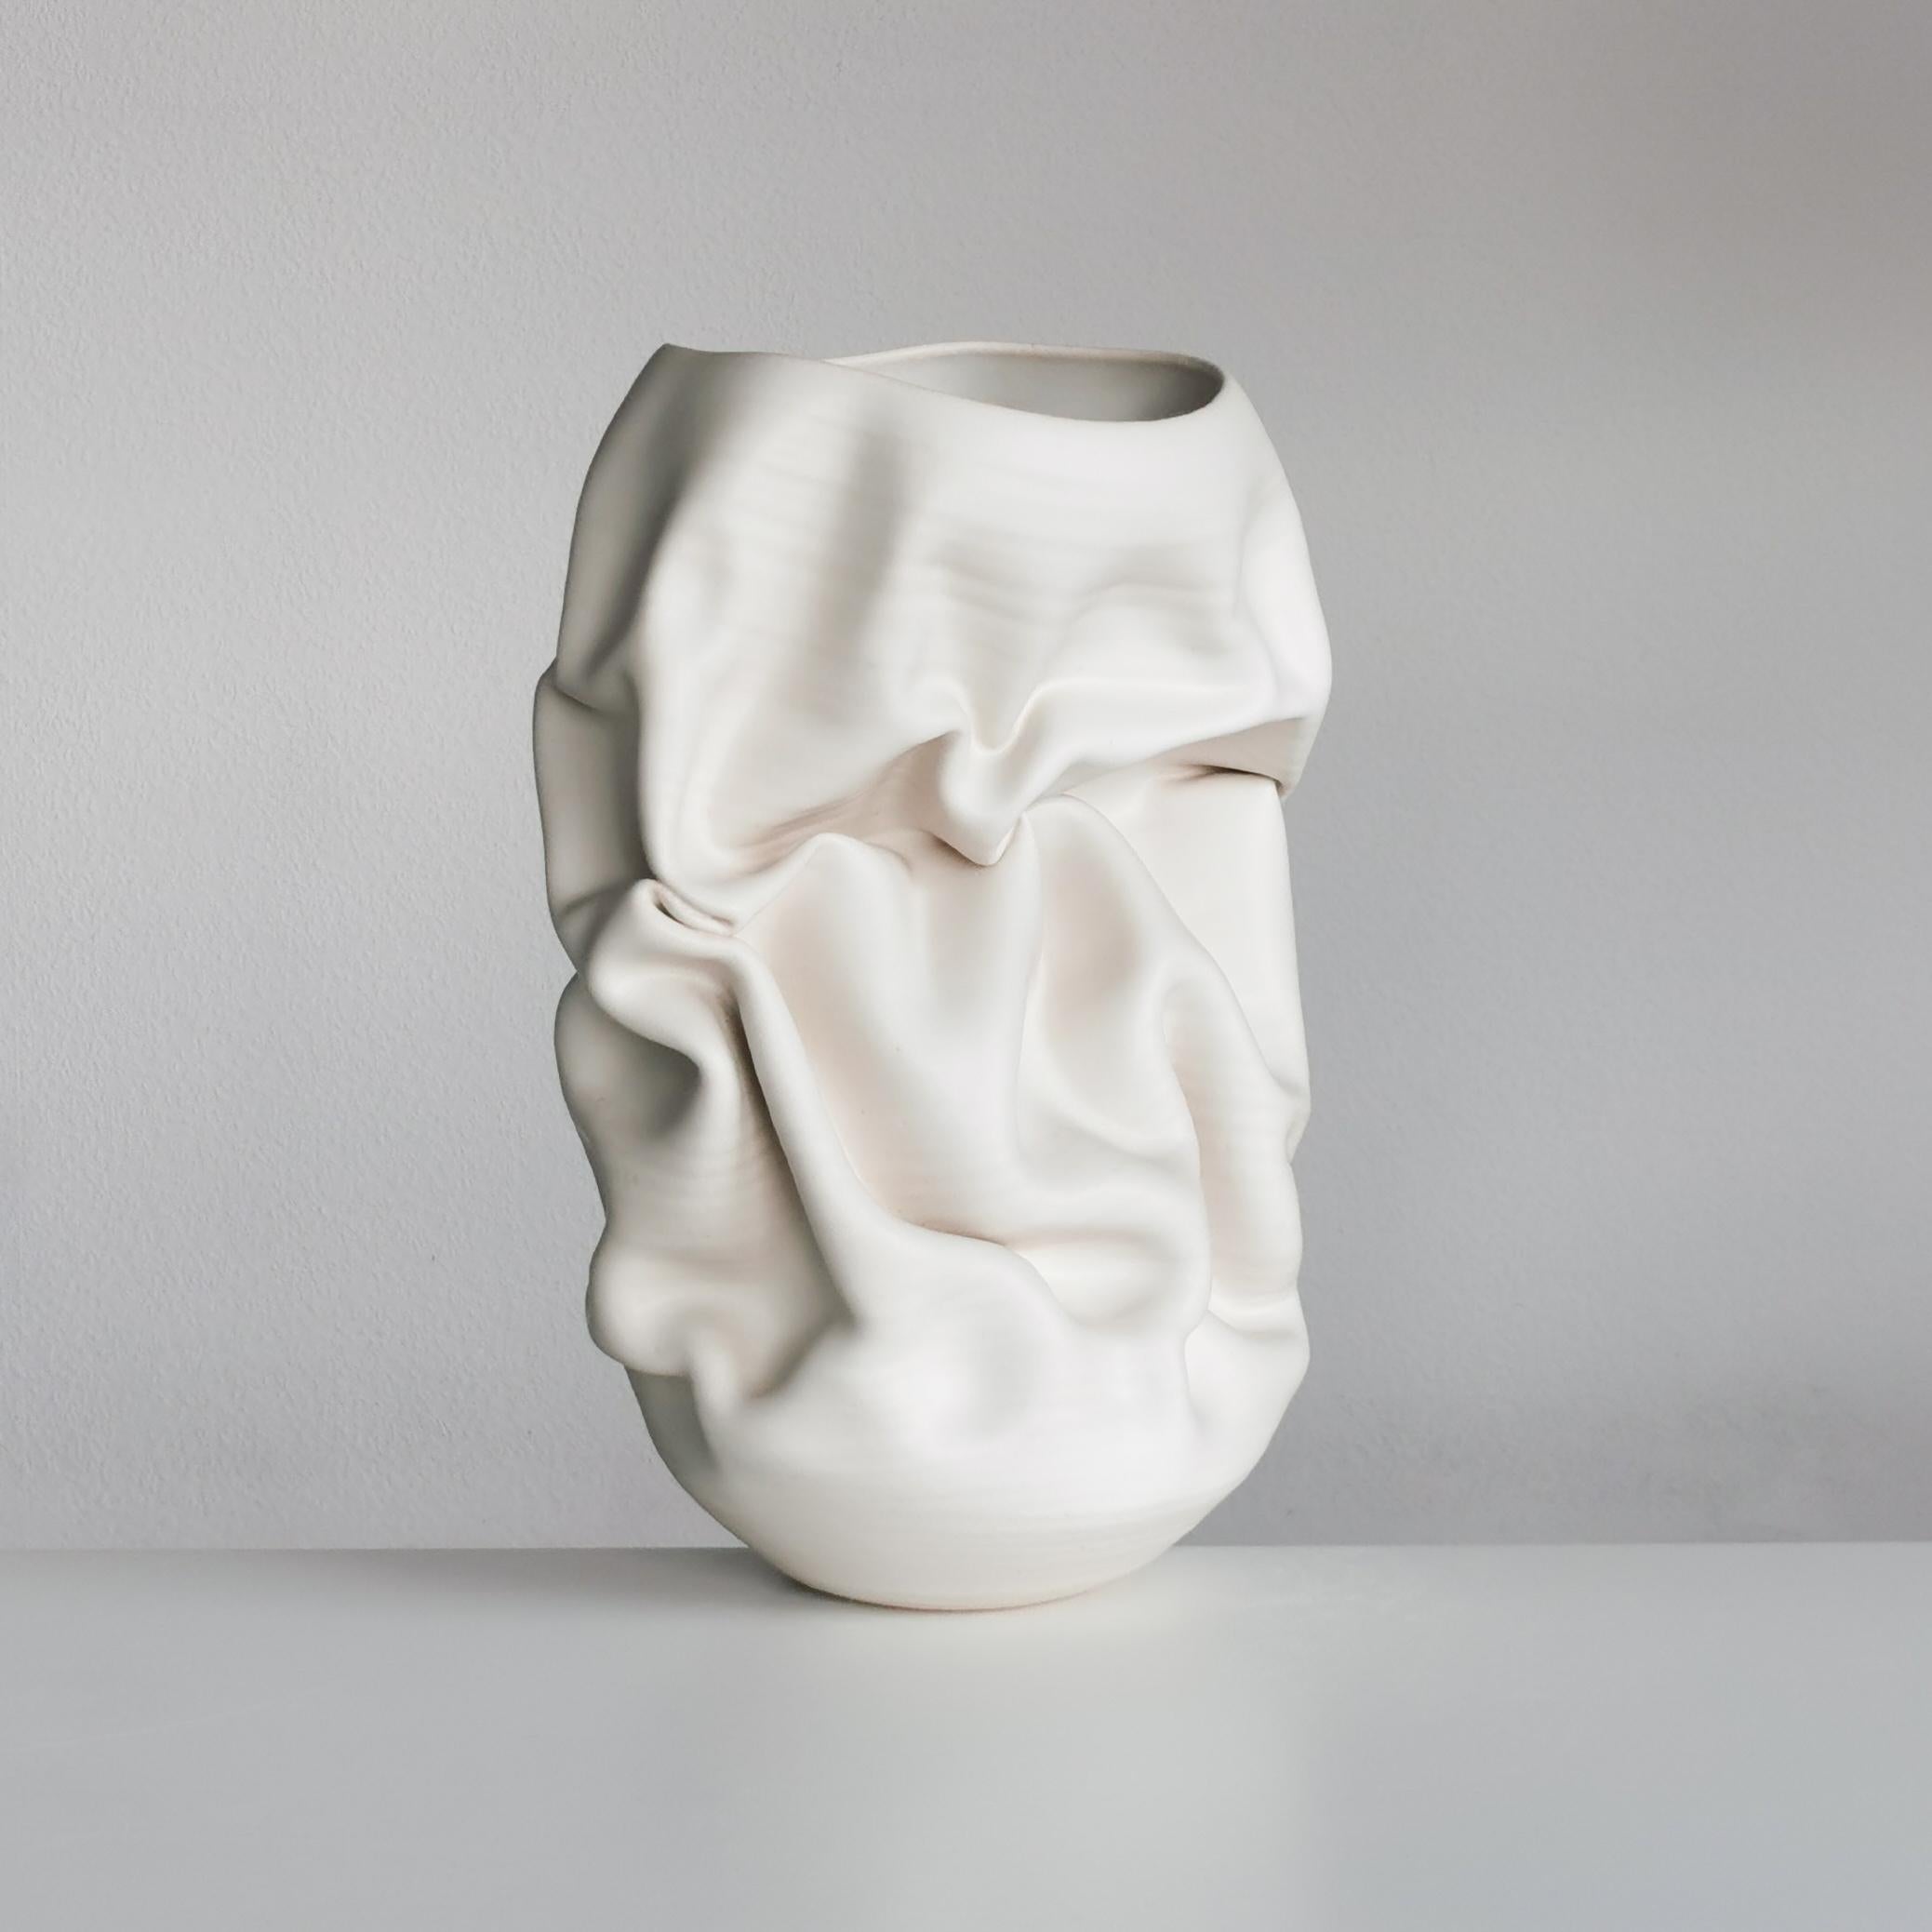 Ceramic Sculpture Vessel, N. 50 Medium Tall White Crumpled Form, Objet d'Art 1